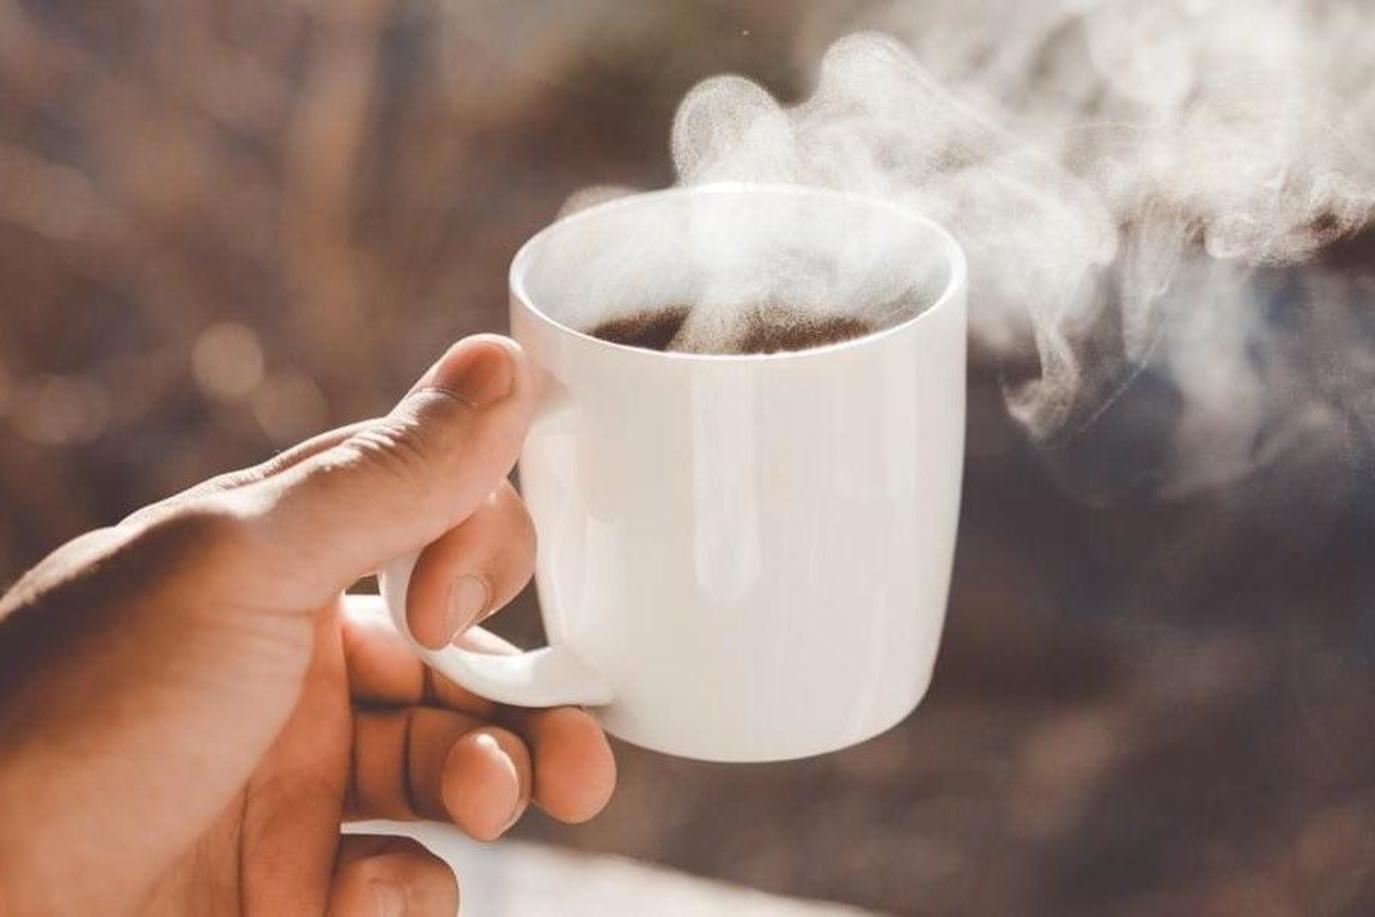 حذار من شرب الشاي الساخن جداً ! | مجلة سيدتي